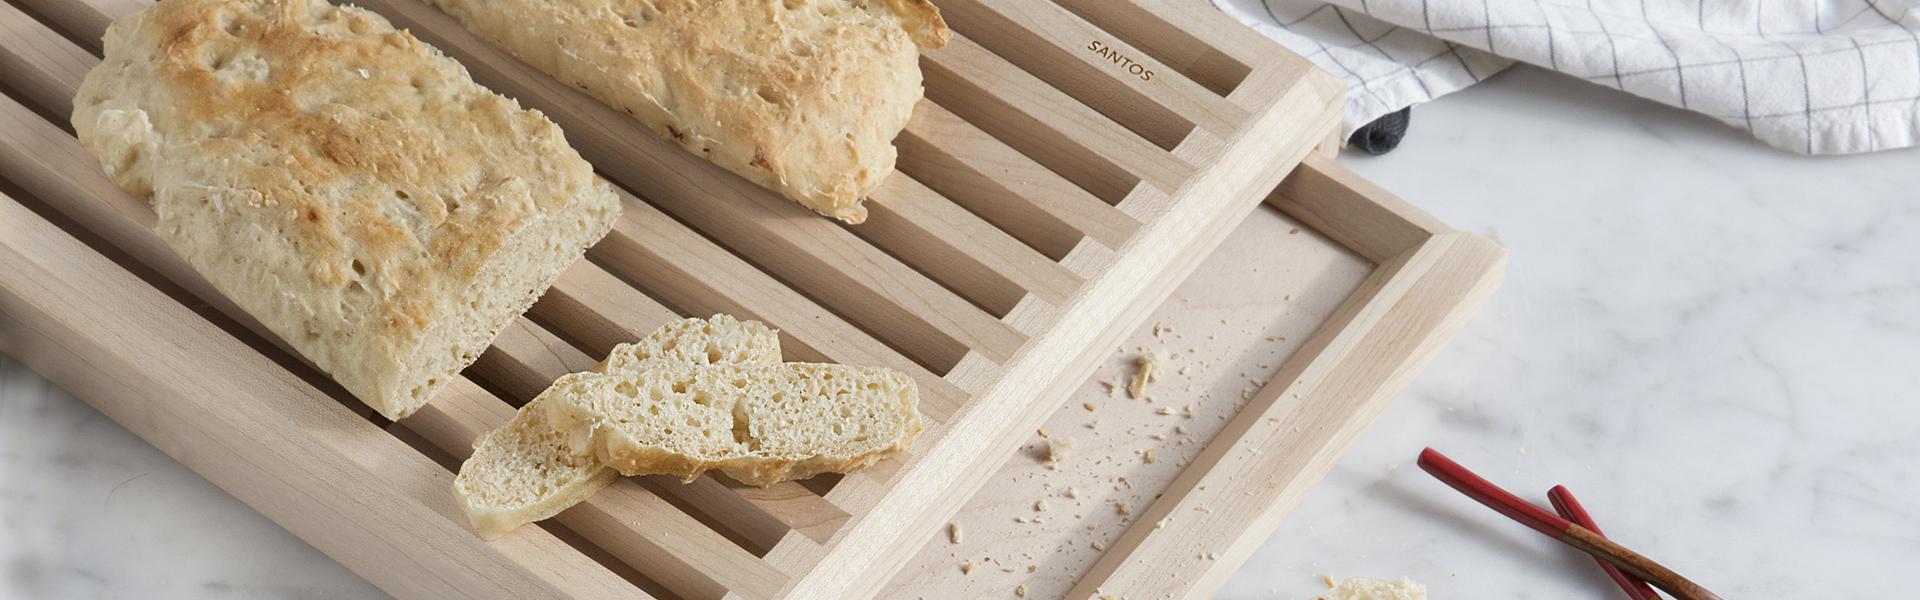 Receta de pan de cristal en el calendario 2019 de cocinas Santos